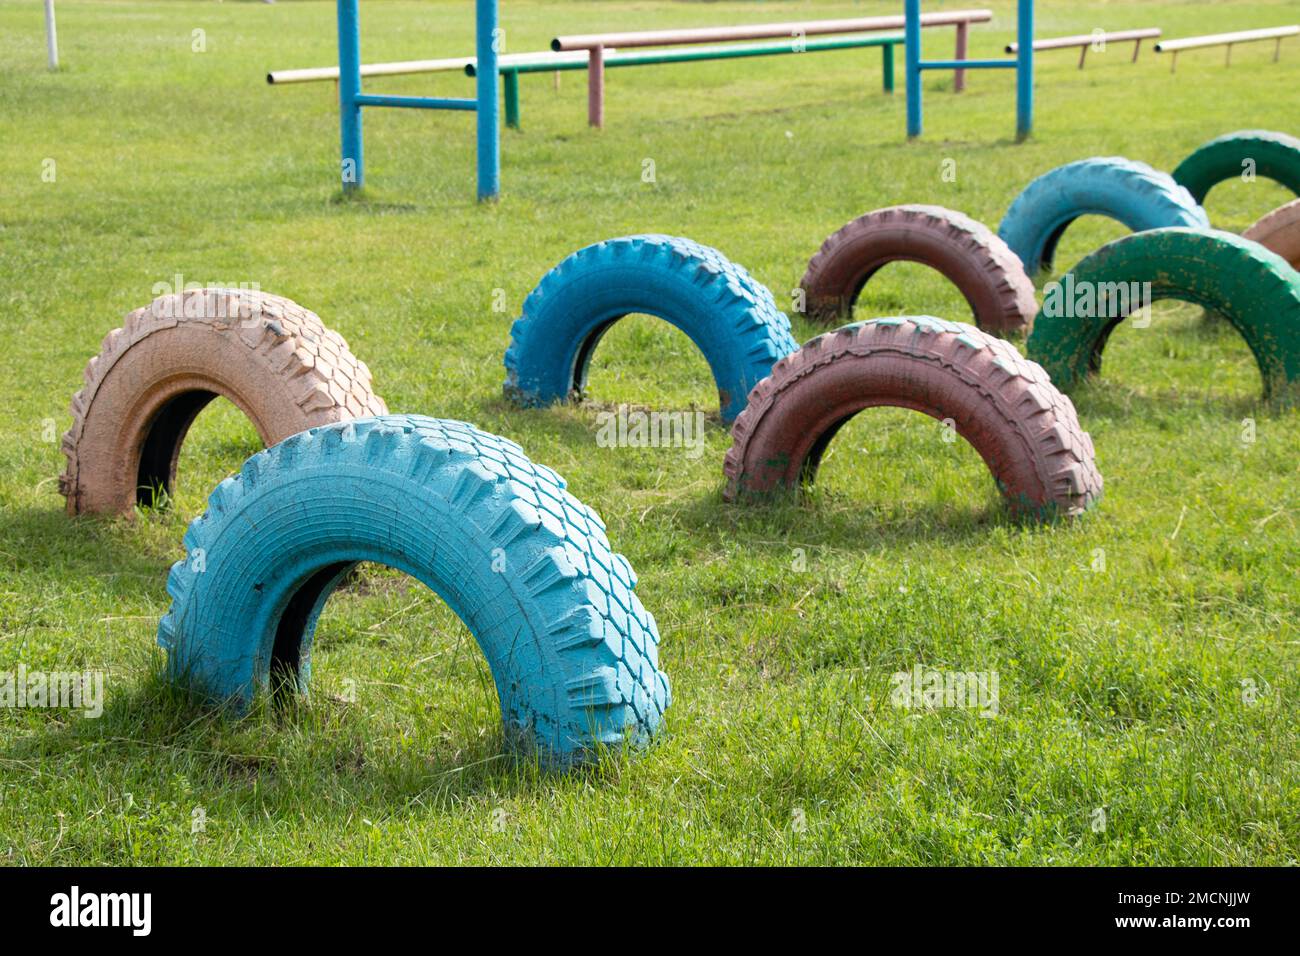 les vieux pneus peints avec de la peinture sont enterrés dans le sol sur le terrain de jeux pour enfants pour la fixation, les pneus sont dans le sol sur la pelouse Banque D'Images